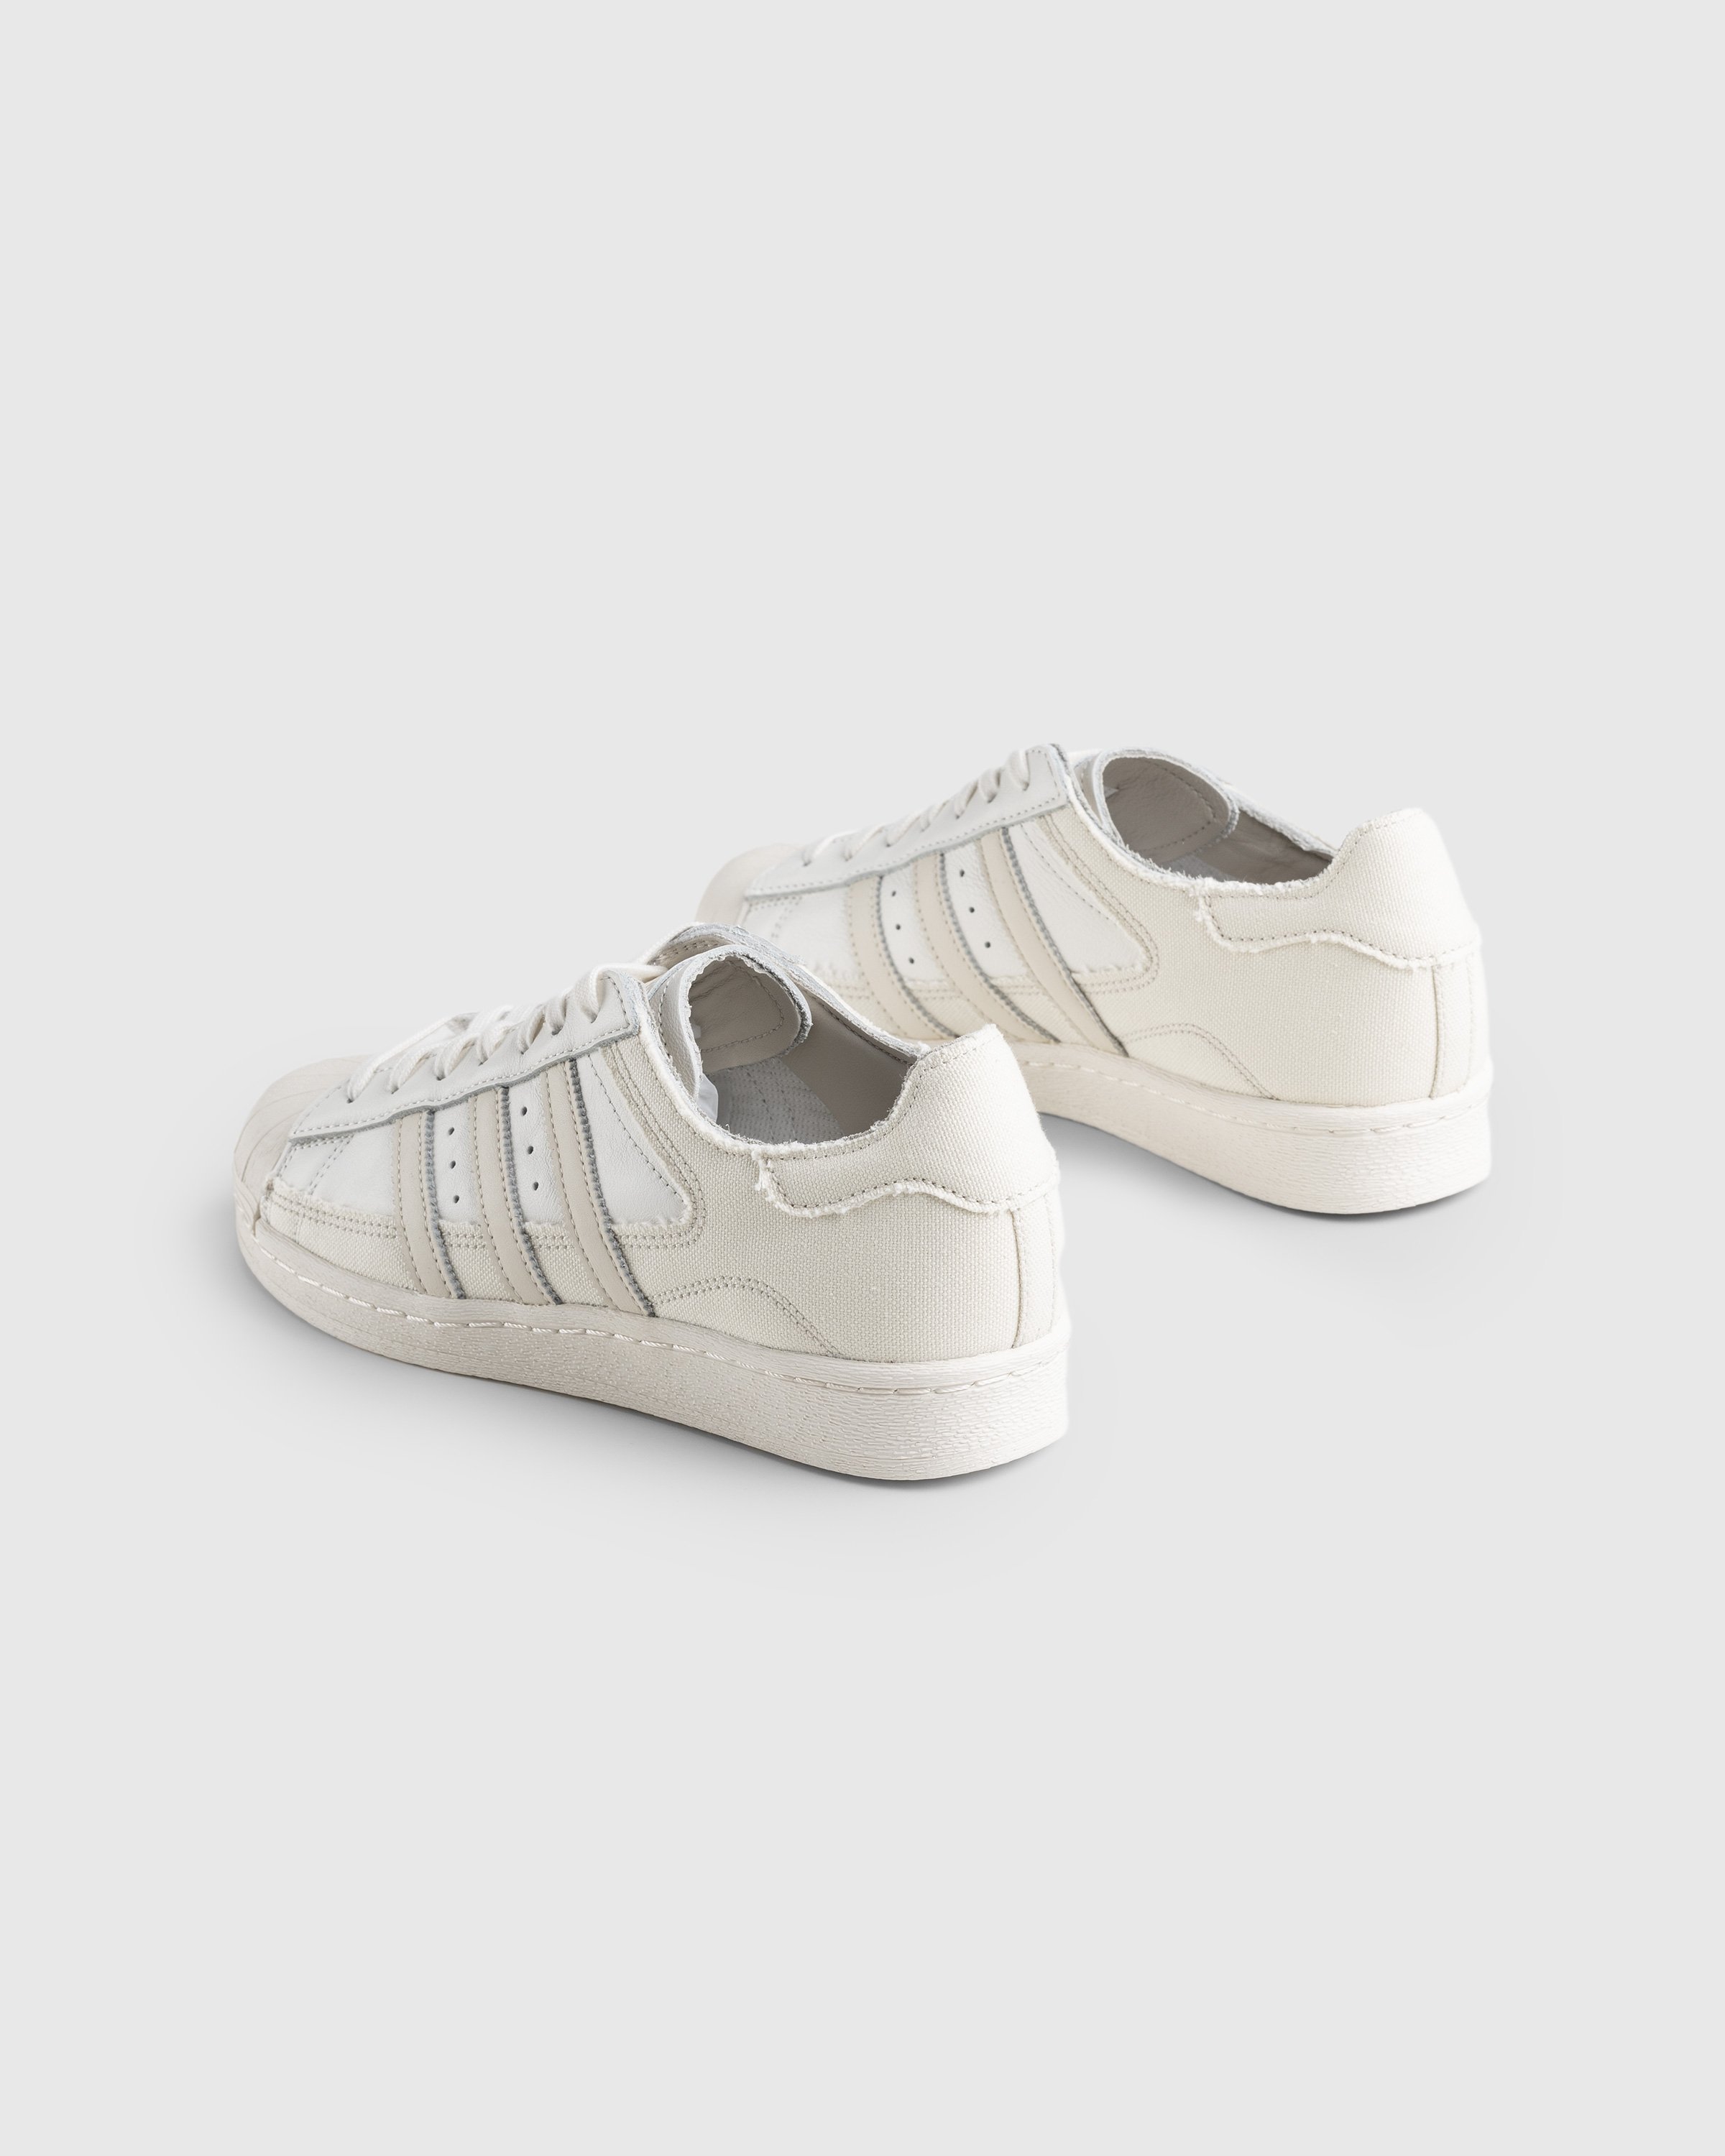 Adidas - Superstar 82 White/Beige - Footwear - Beige - Image 4